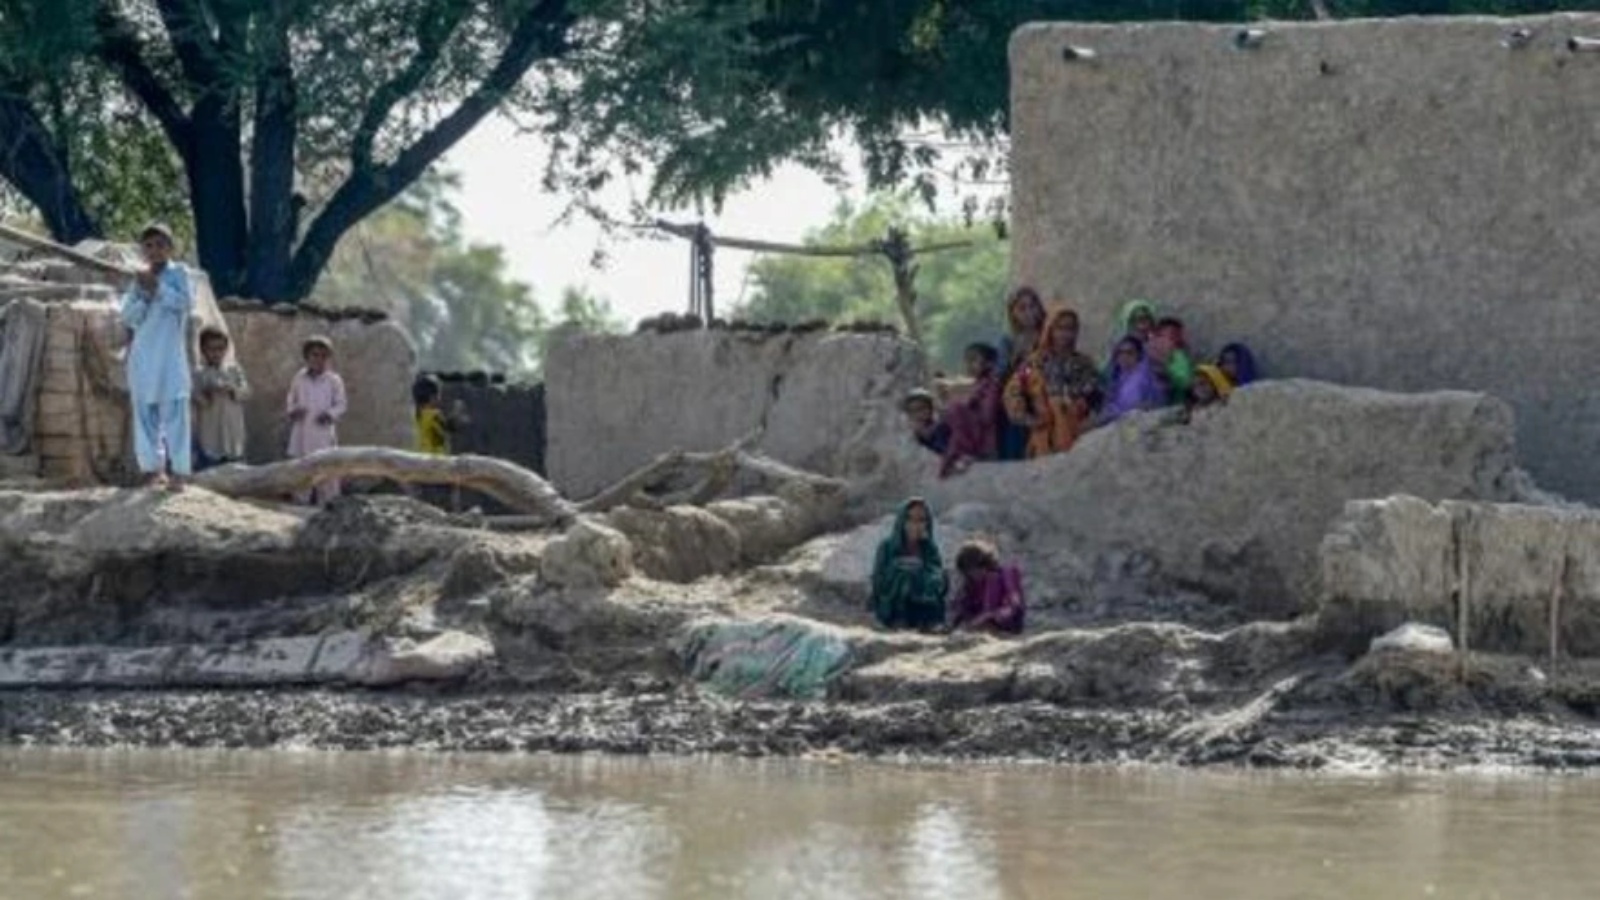 نازحون من الفيضانات ينتظرون بالقرب من منازلهم الحصول على مساعدات الطوارئ، في منطقة راجانبور الواقعة في مقاطعة البنجاب في باكستان، في 4 سبتمبر 2022